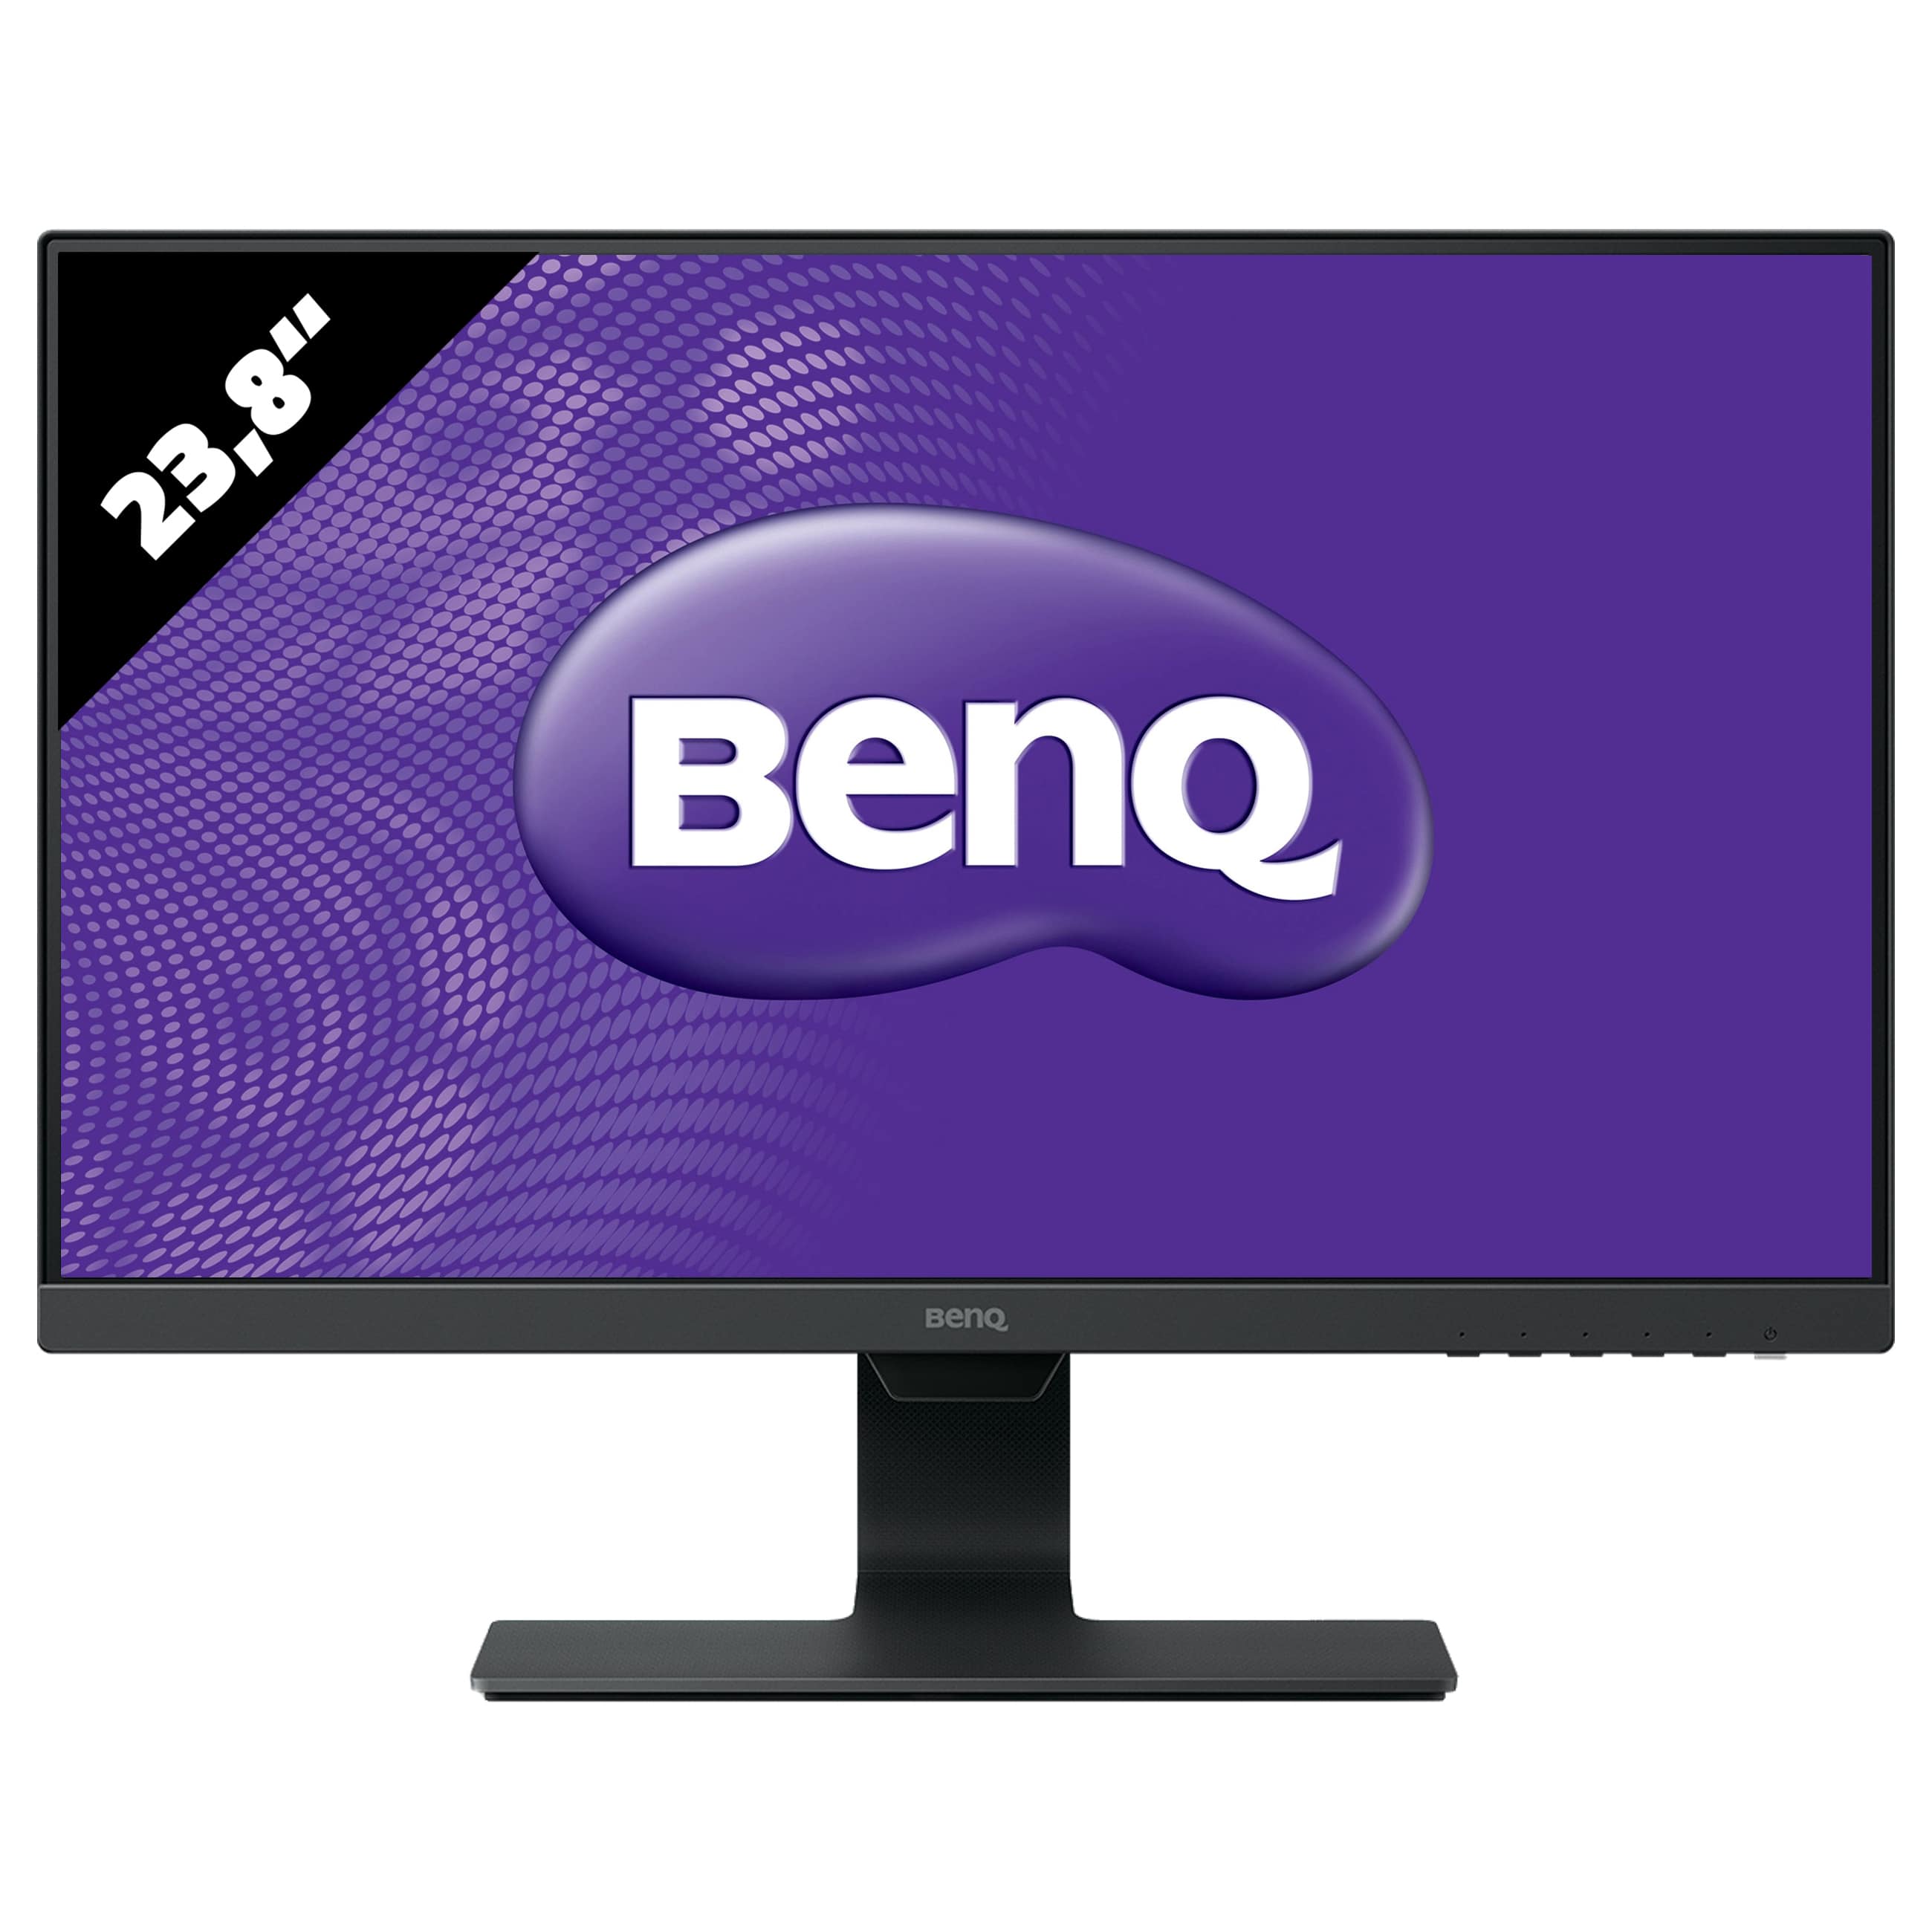 Benq LCD Monitor GW2480 - 1920 x 1080 - FHD